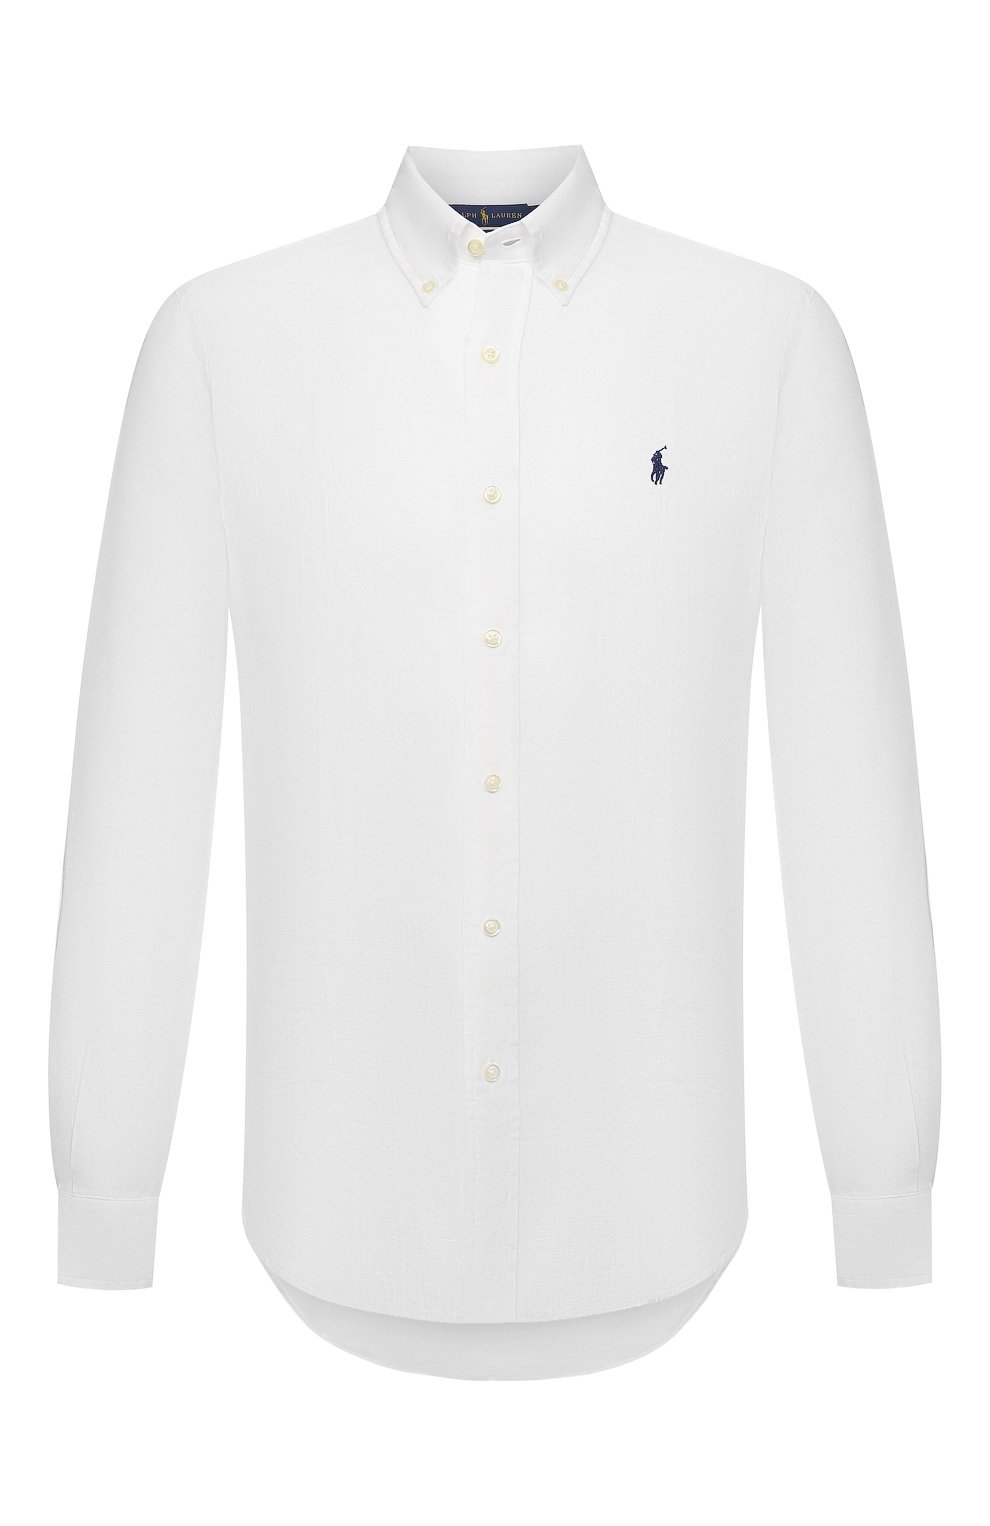 Мужская белая льняная рубашка POLO RALPH LAUREN купить в интернет-магазине  ЦУМ, арт. 710829449